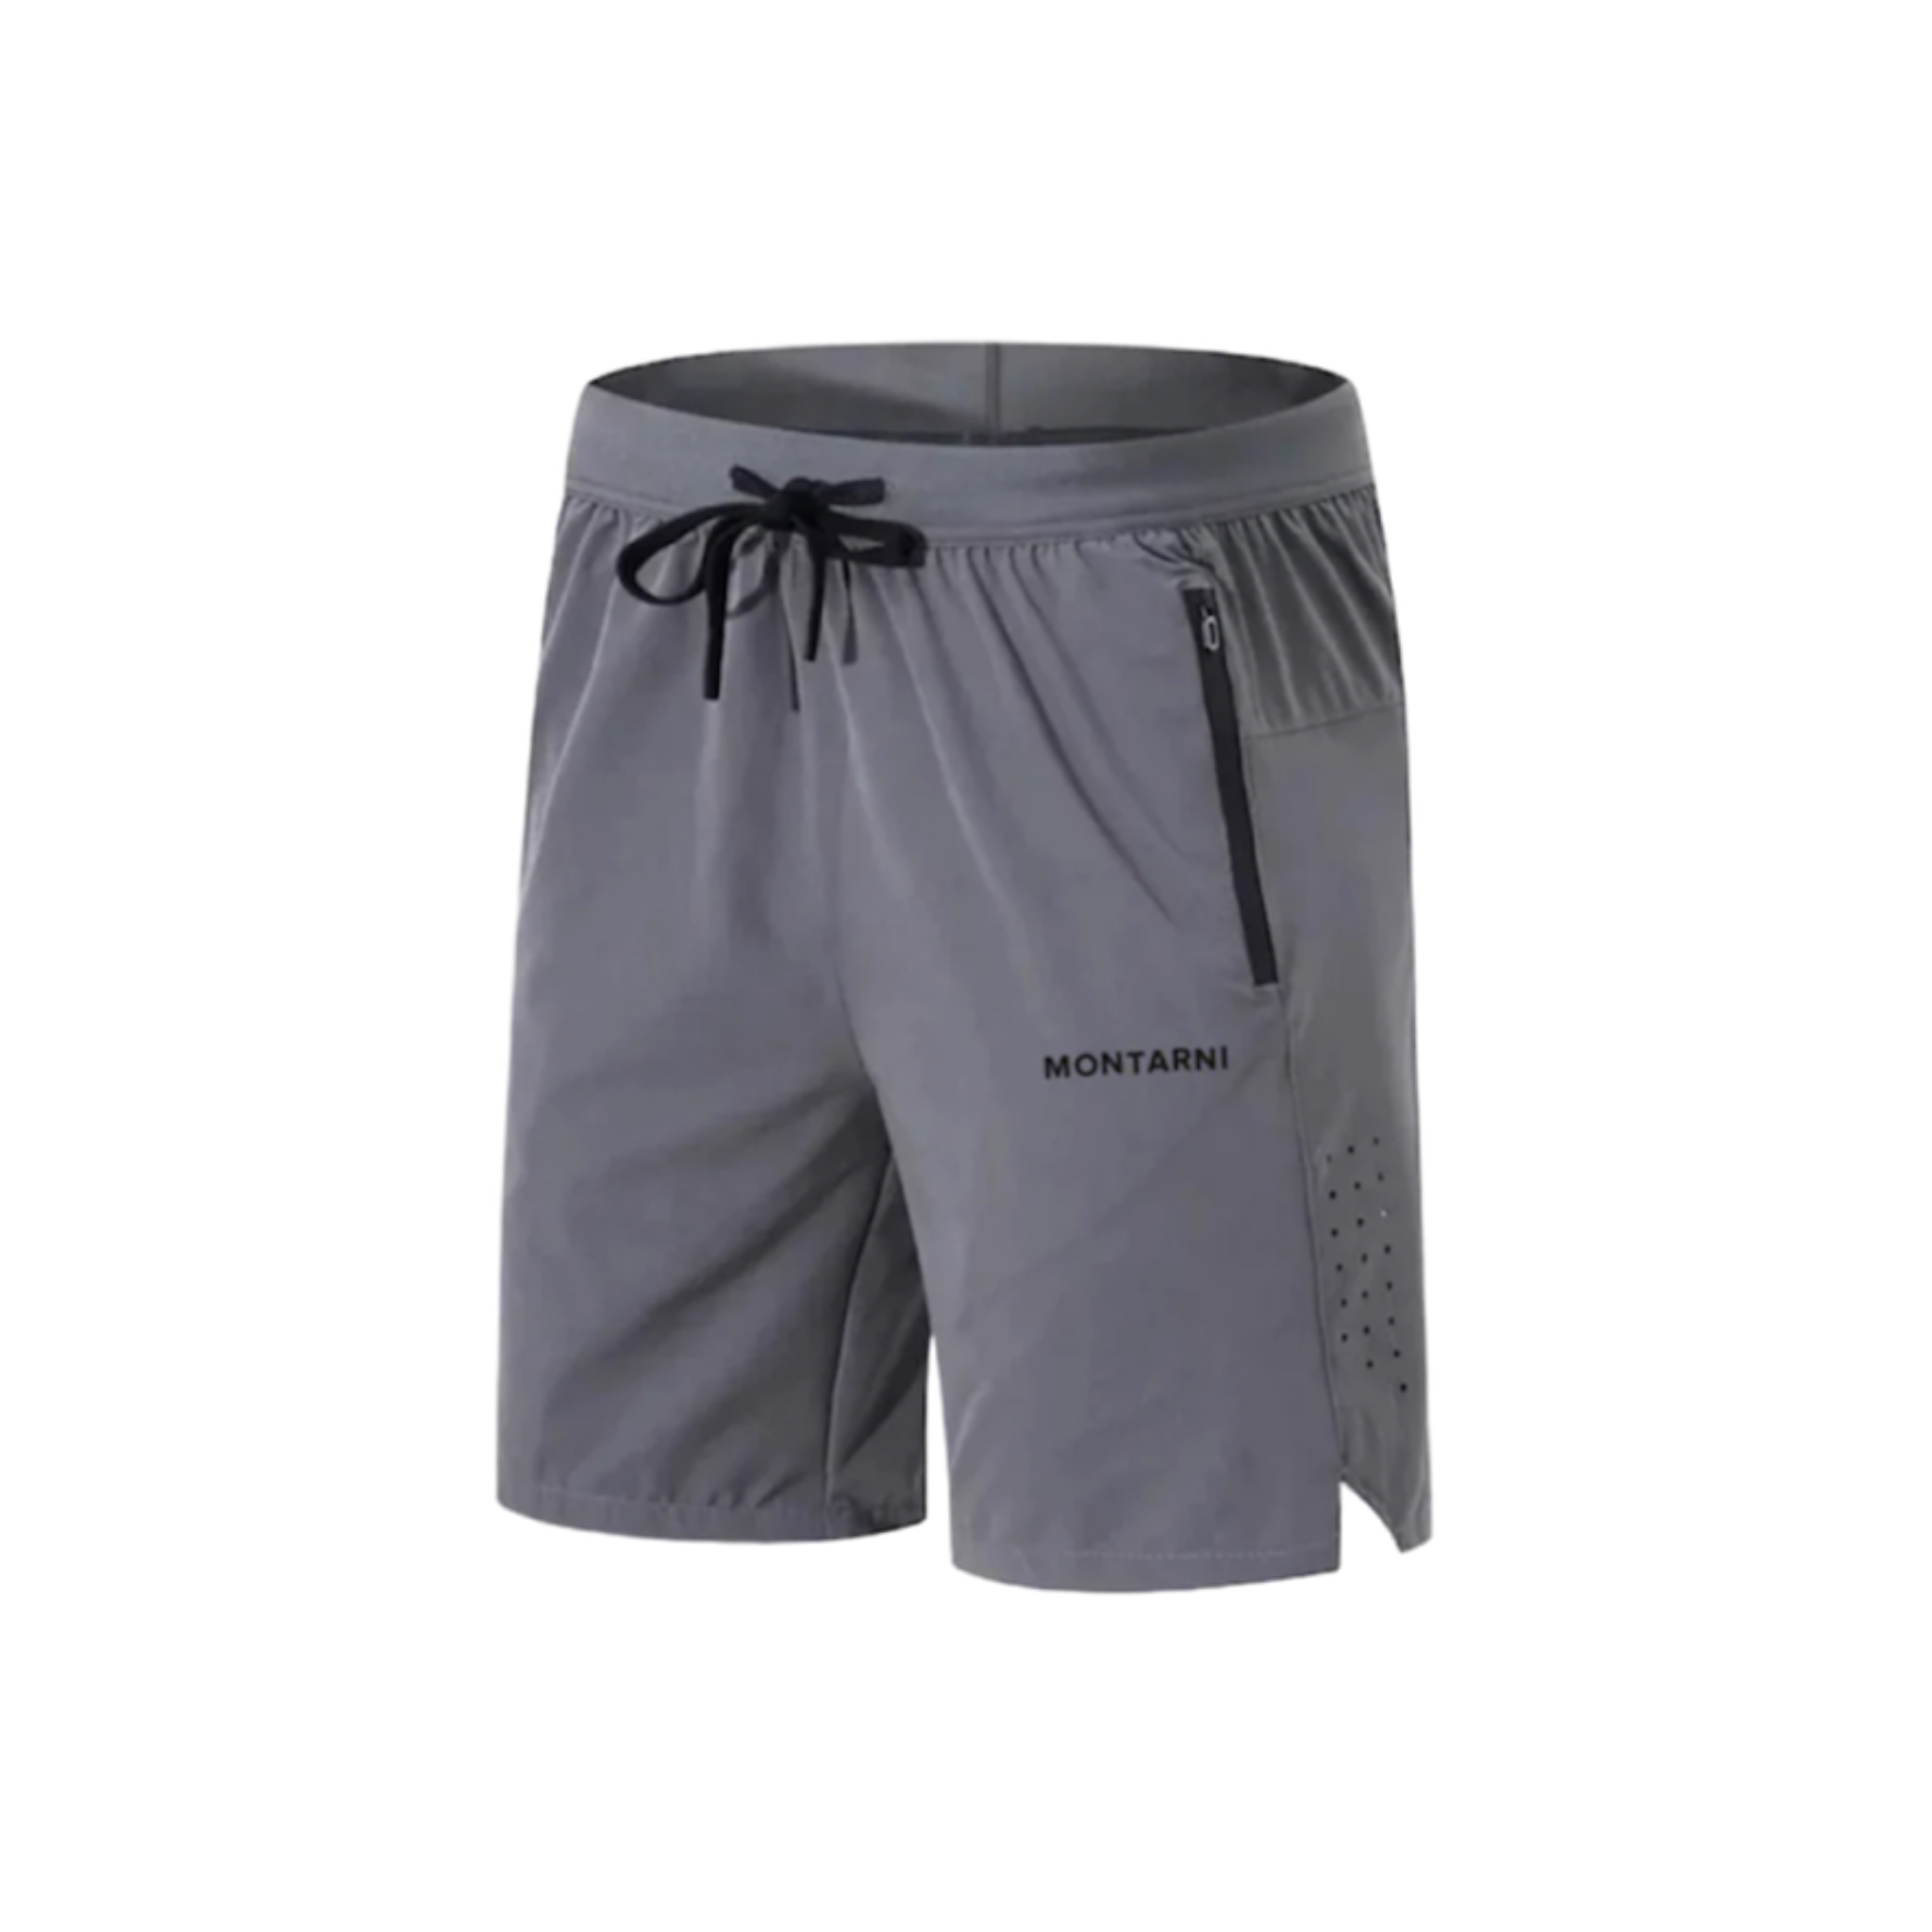 MONTARNI - Grey Draft Shorts